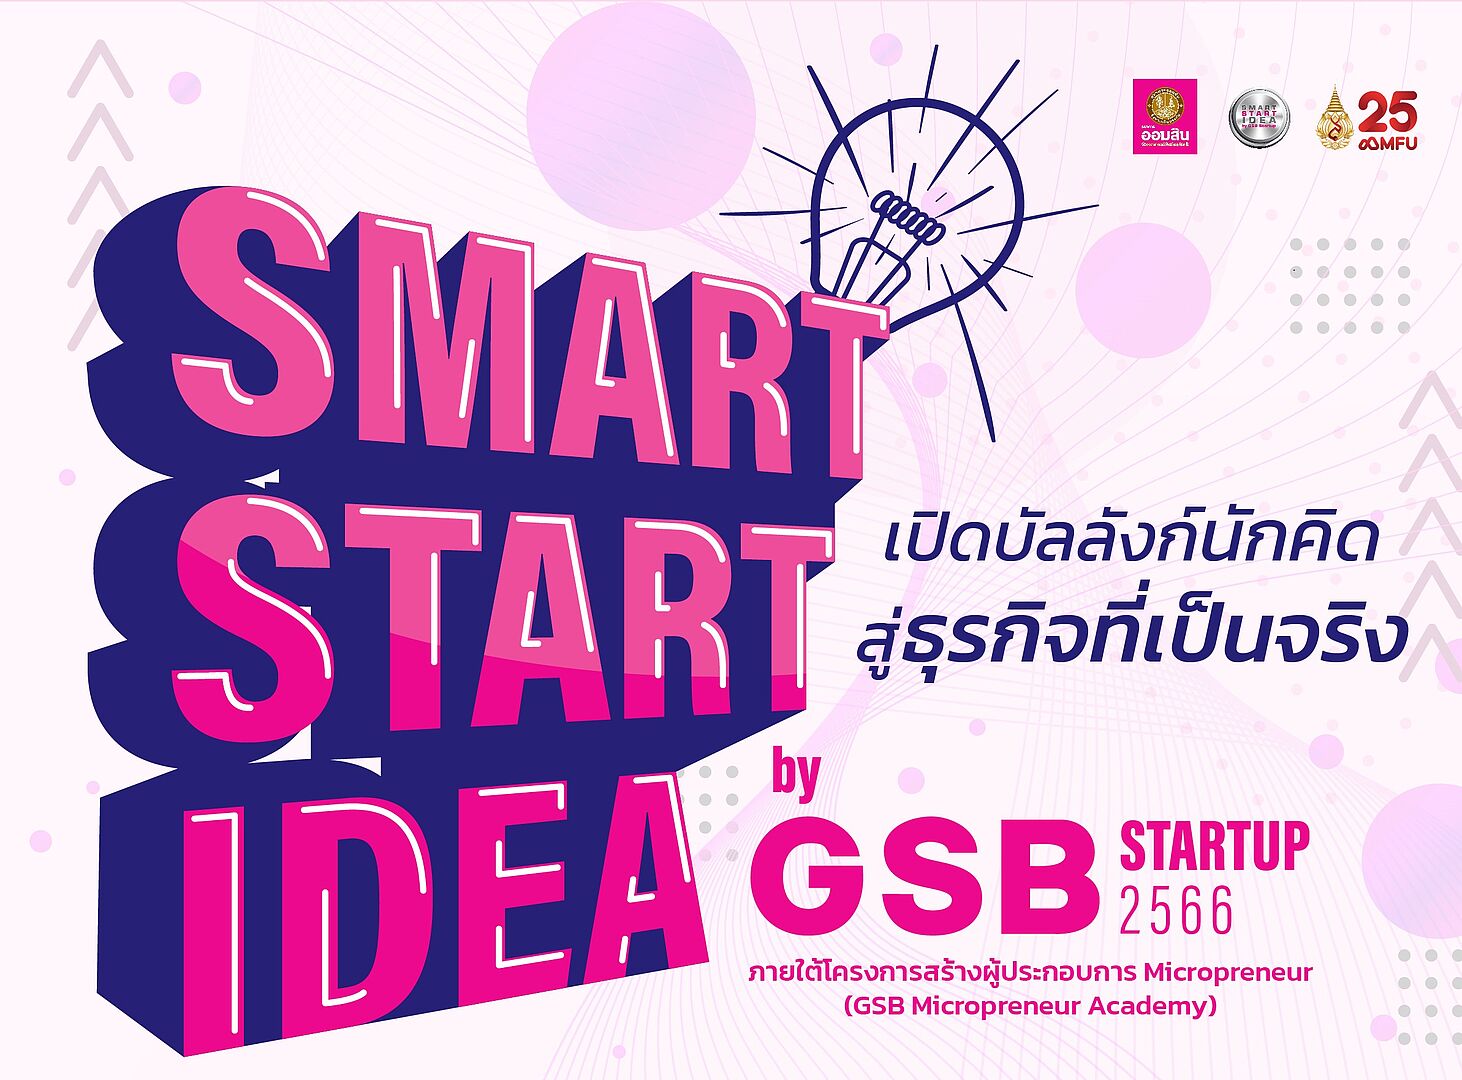 ขอเชิญชวนนักศึกษาปัจุบันและศิษย์เก่าร่วมประกวดผลงานในกิจกรรม Smart Start Idea by GSB Startup 2566 